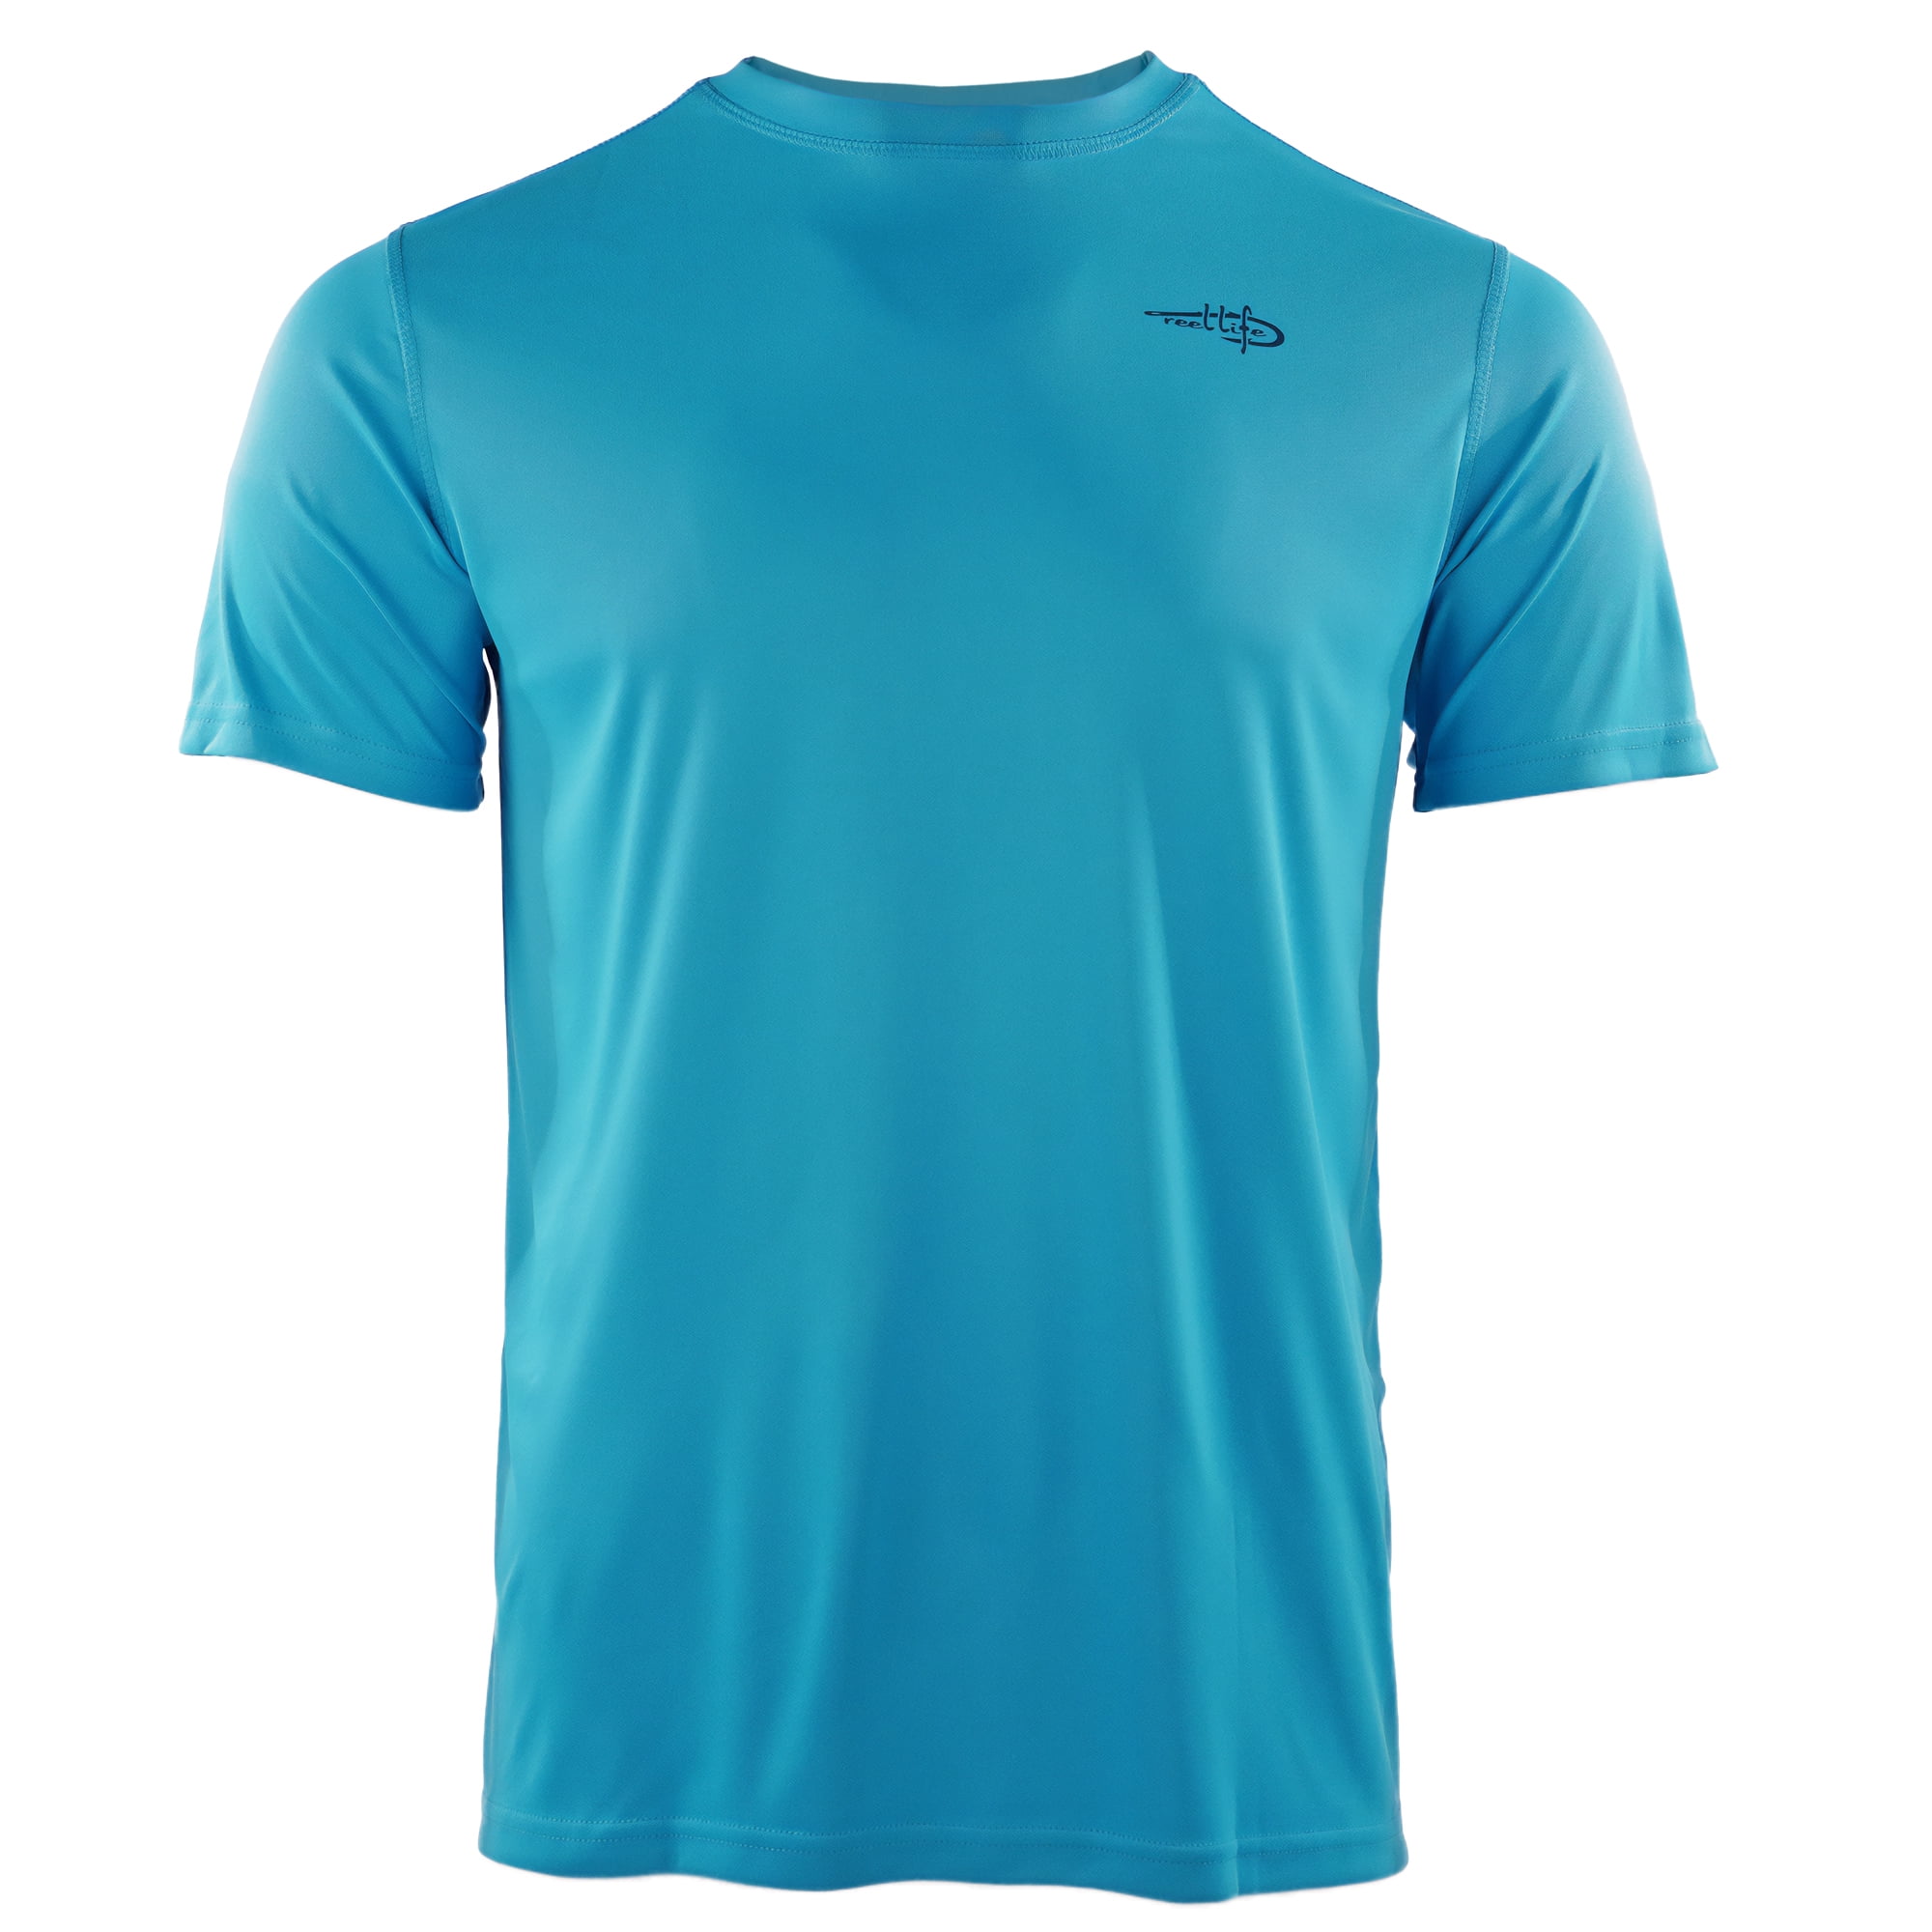 Reel Life United States of Wave UV T-Shirt - Large - Horizion Blue